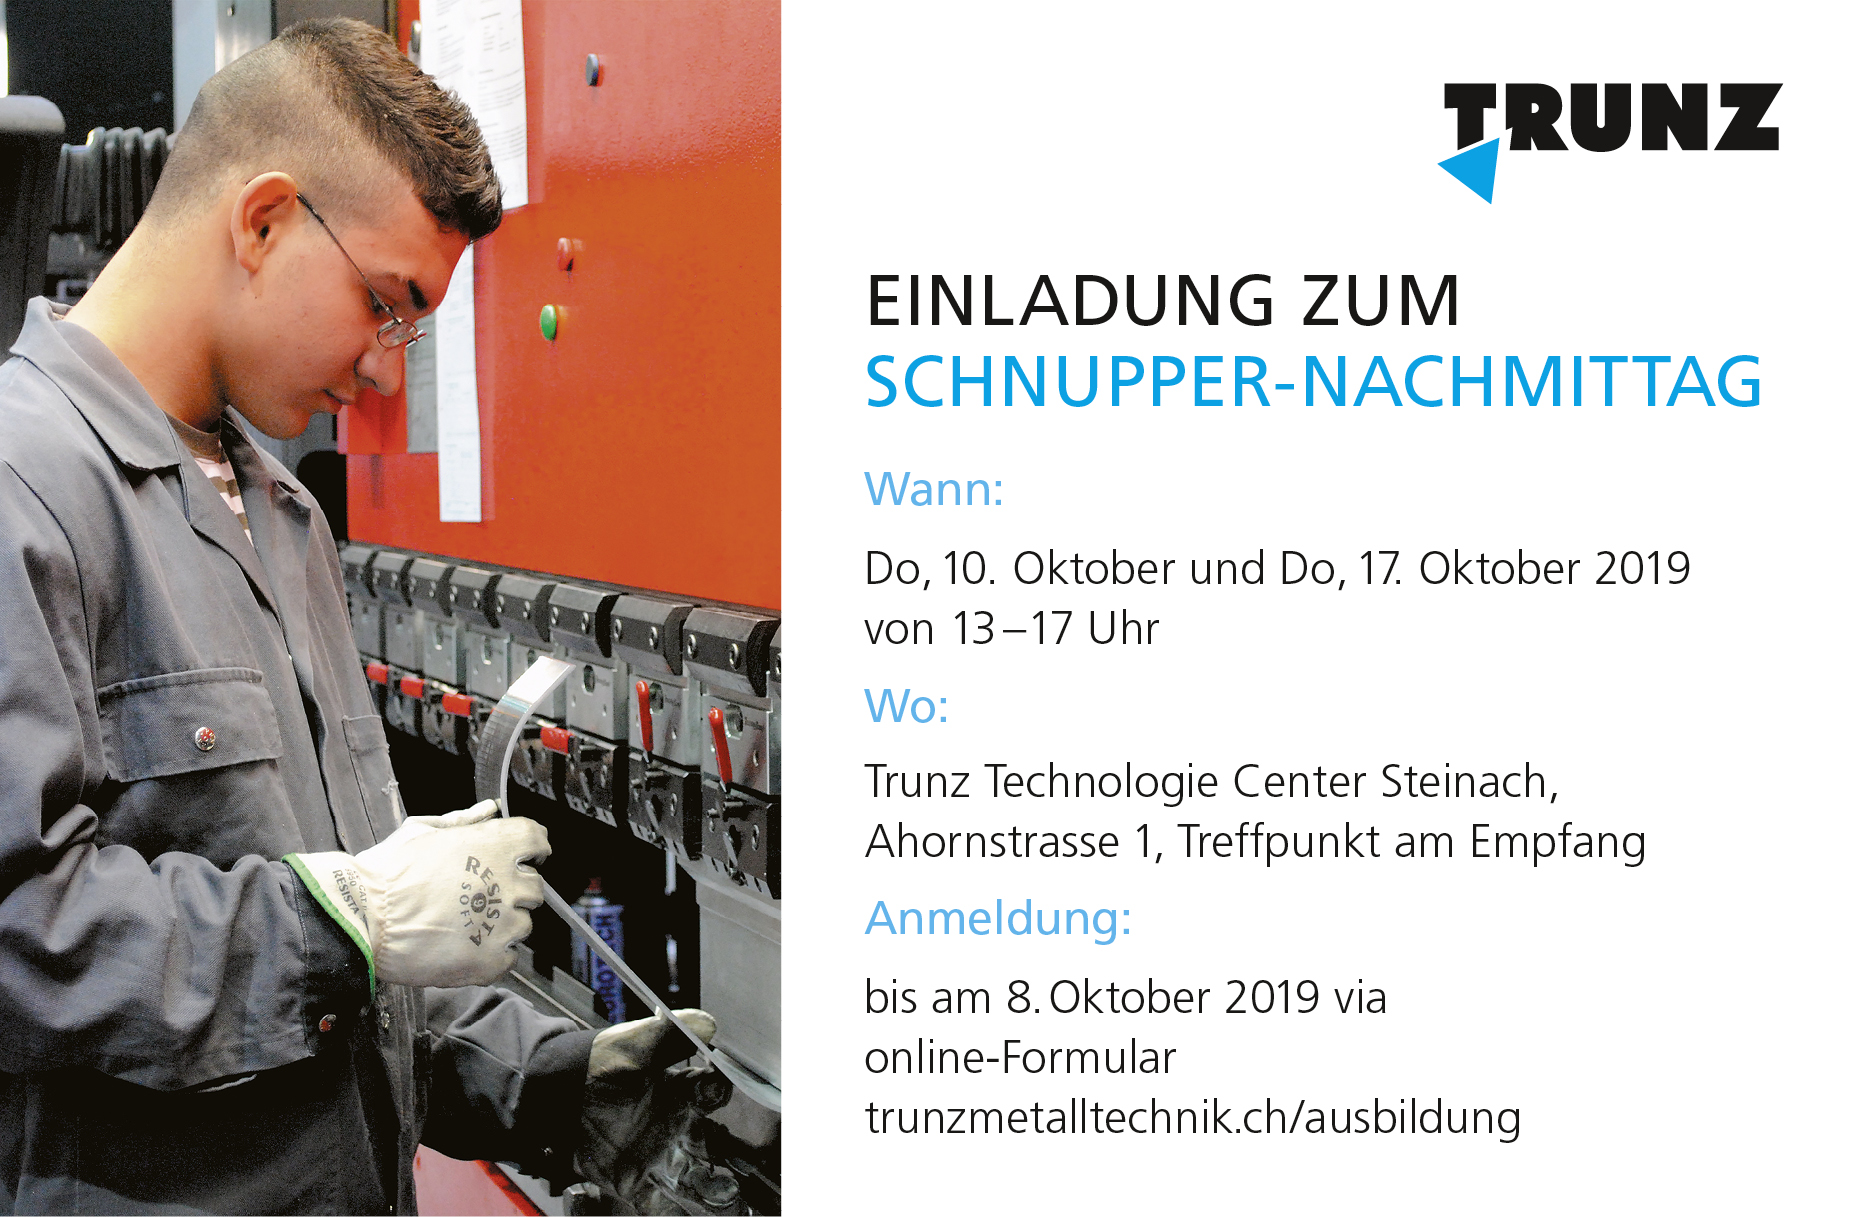 Einladung zum Schnupper-Nachmittag am 10. und 17. Oktober 2019